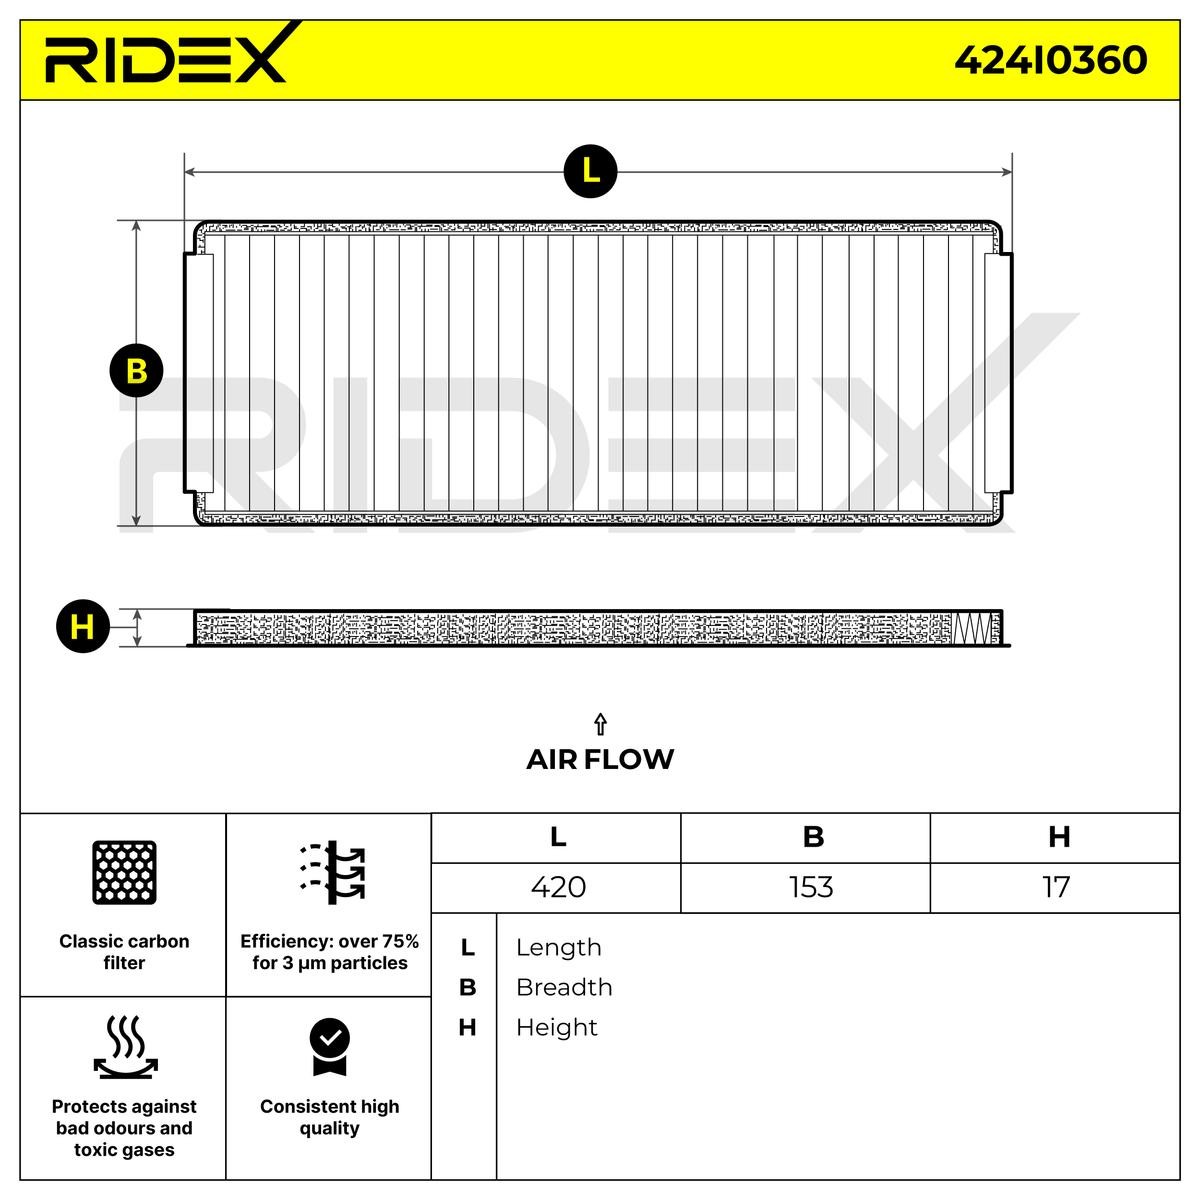 OEM-quality RIDEX 424I0360 Air conditioner filter